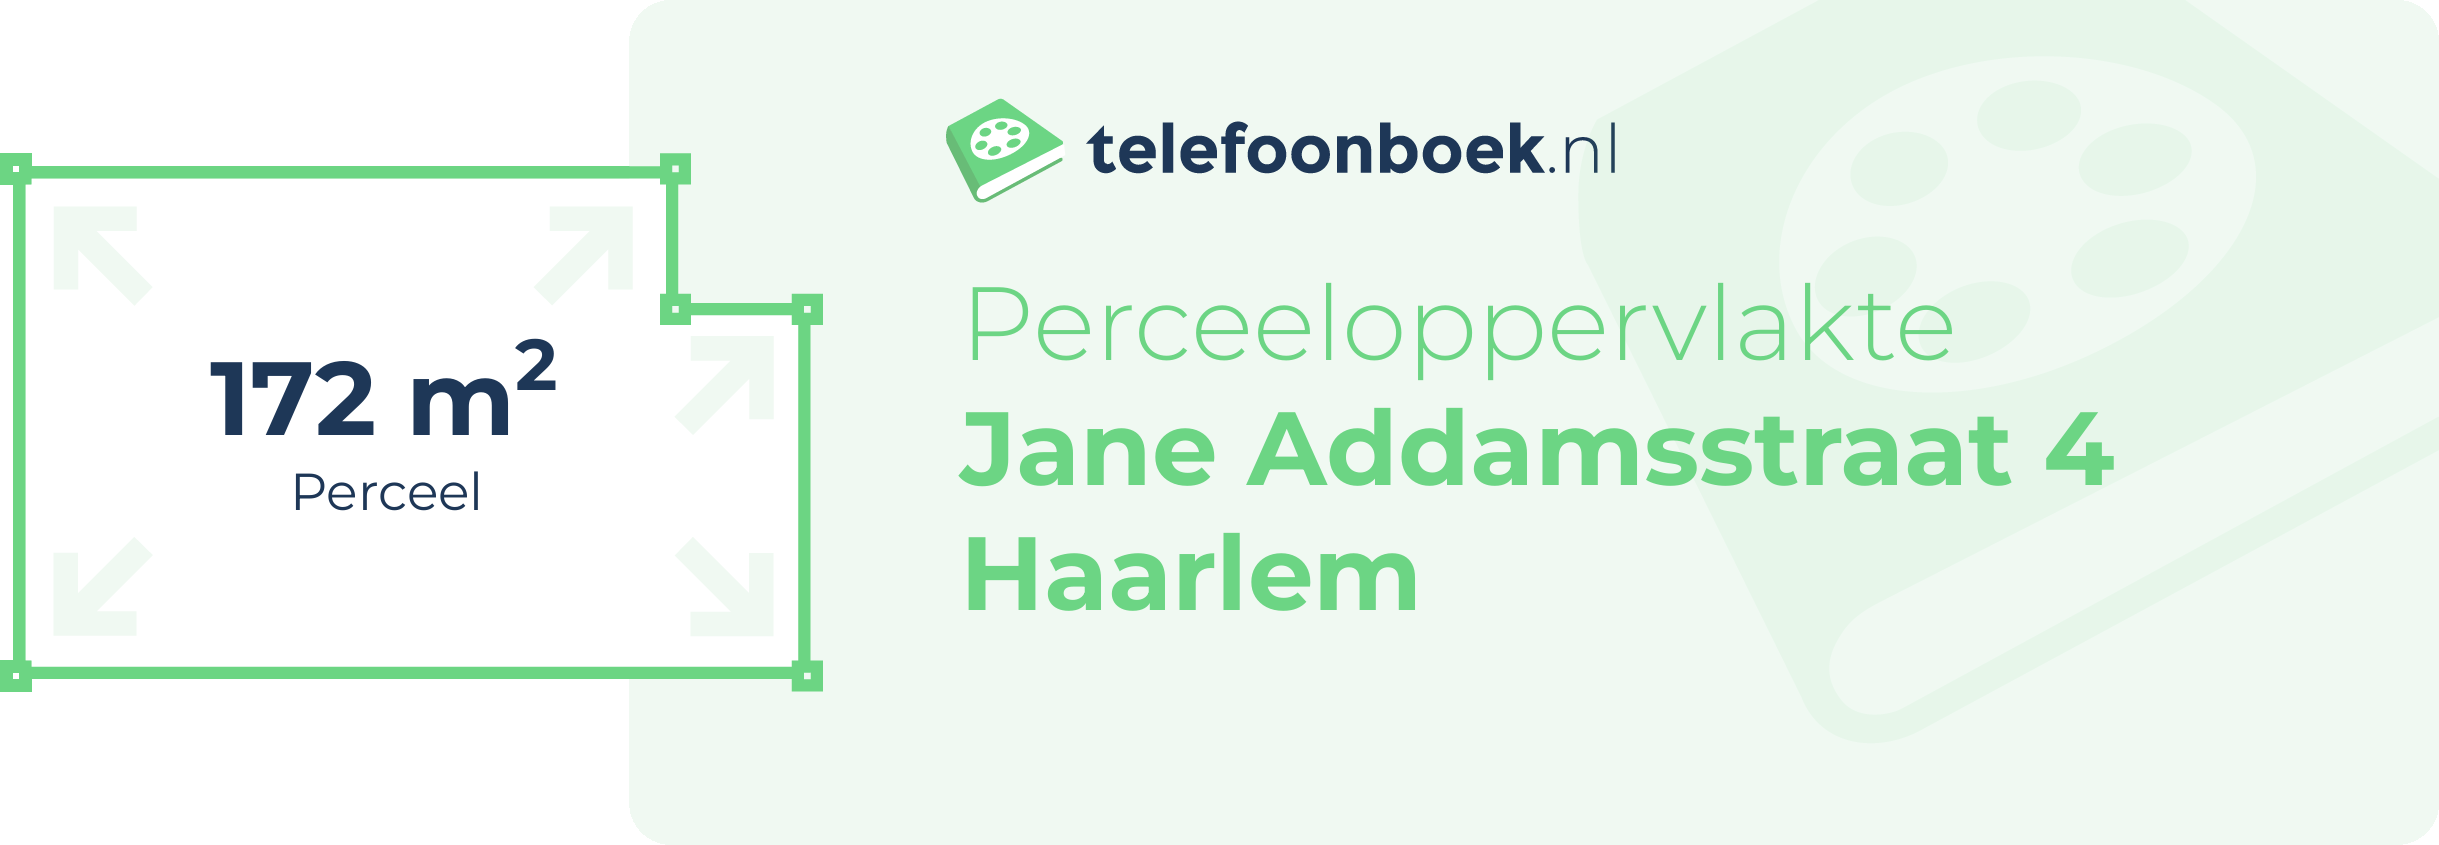 Perceeloppervlakte Jane Addamsstraat 4 Haarlem